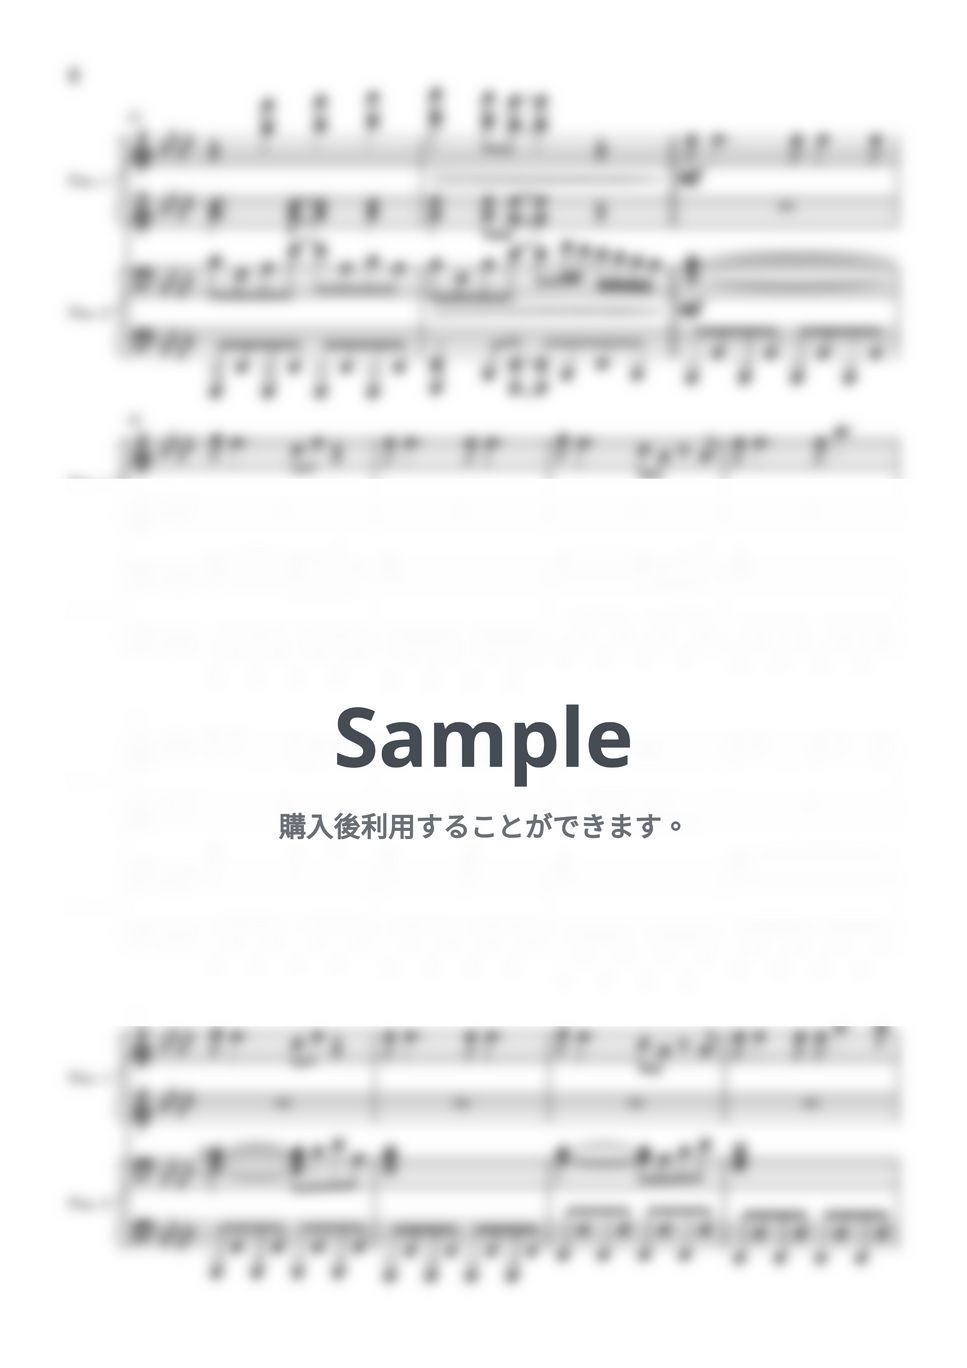 乃木坂46 - Monopoly (ピアノ連弾/新曲) by やすpiano